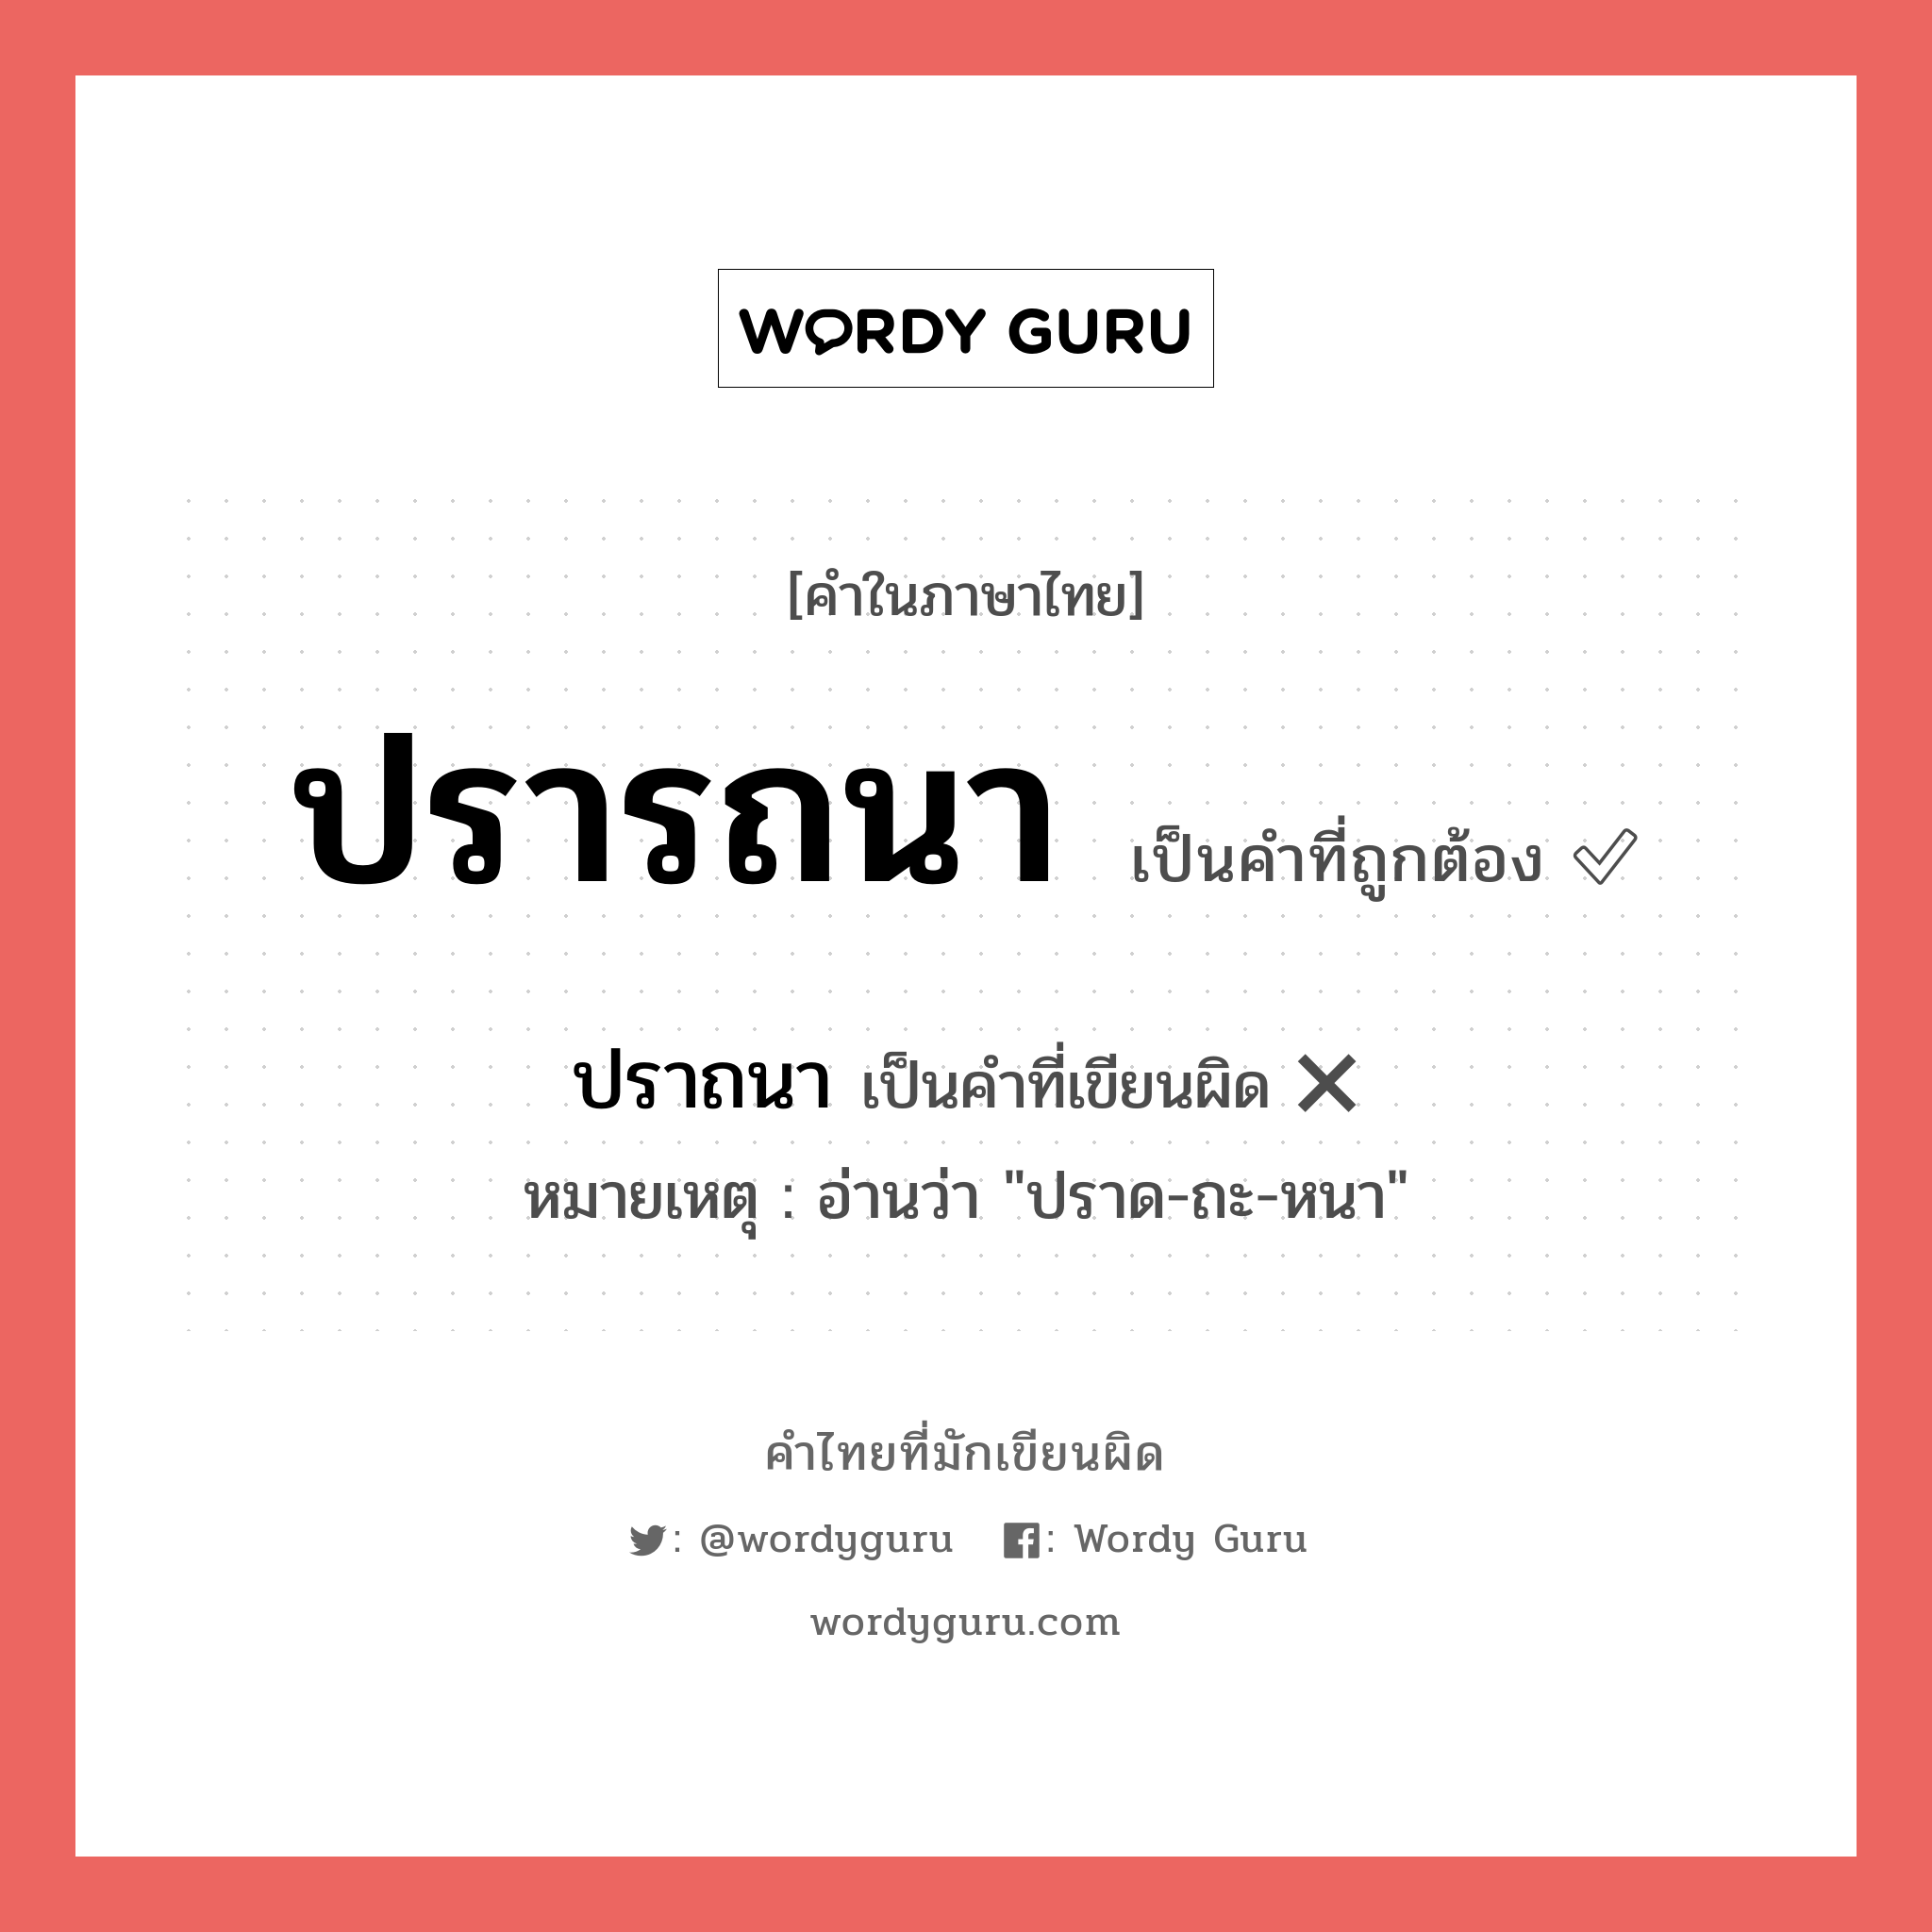 ปรารถนา หรือ ปราถนา คำไหนเขียนถูก?, คำในภาษาไทยที่มักเขียนผิด ปรารถนา คำที่ผิด ❌ ปราถนา หมายเหตุ อ่านว่า "ปราด-ถะ-หนา"